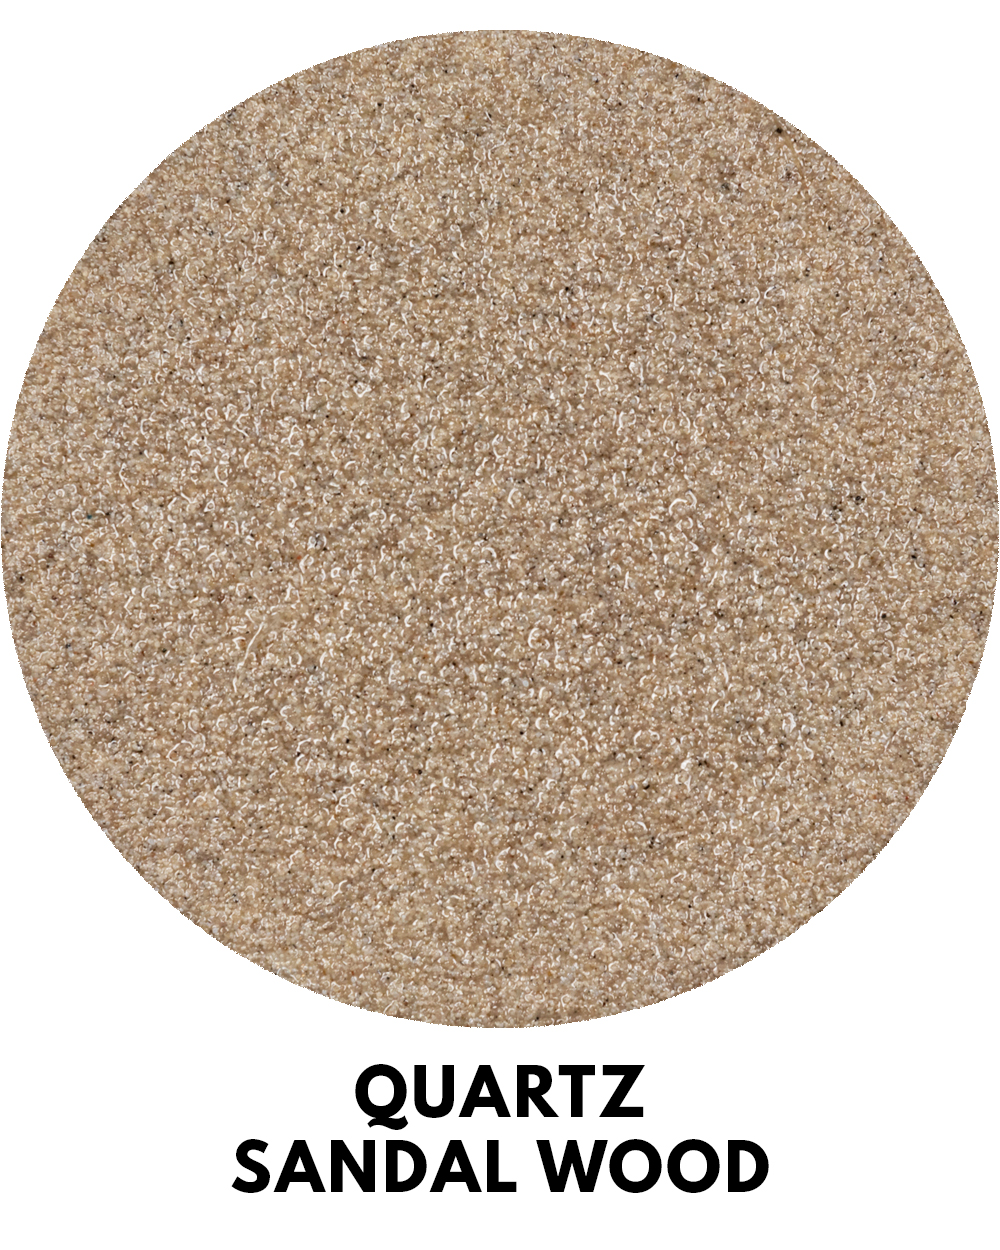 Époxy au sable de quartz